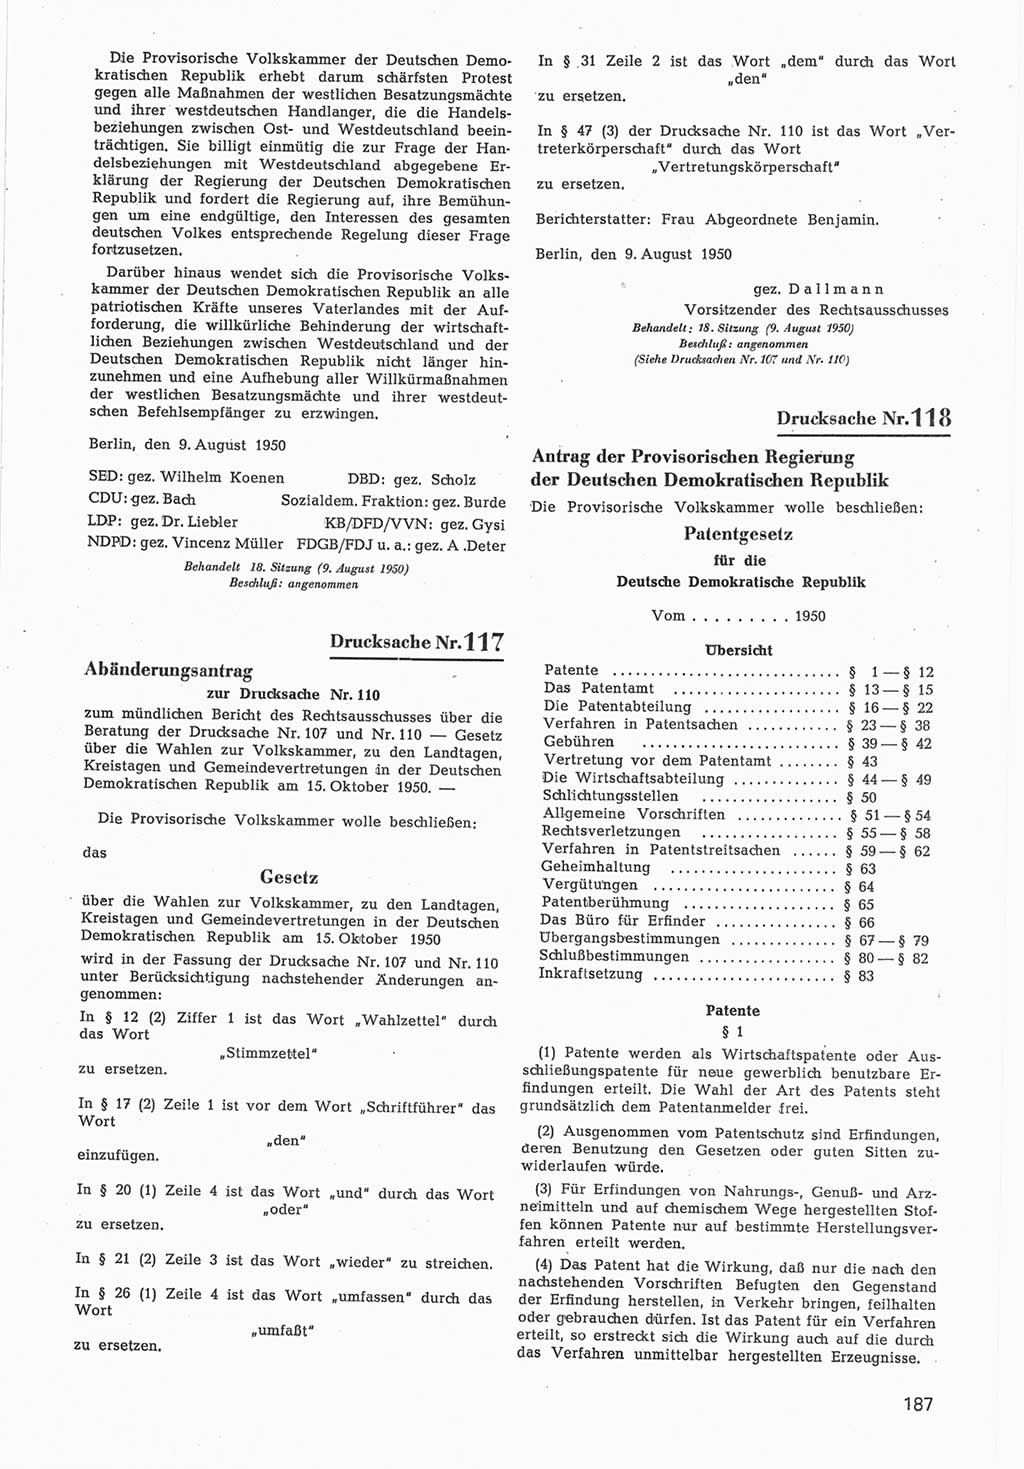 Provisorische Volkskammer (VK) der Deutschen Demokratischen Republik (DDR) 1949-1950, Dokument 789 (Prov. VK DDR 1949-1950, Dok. 789)